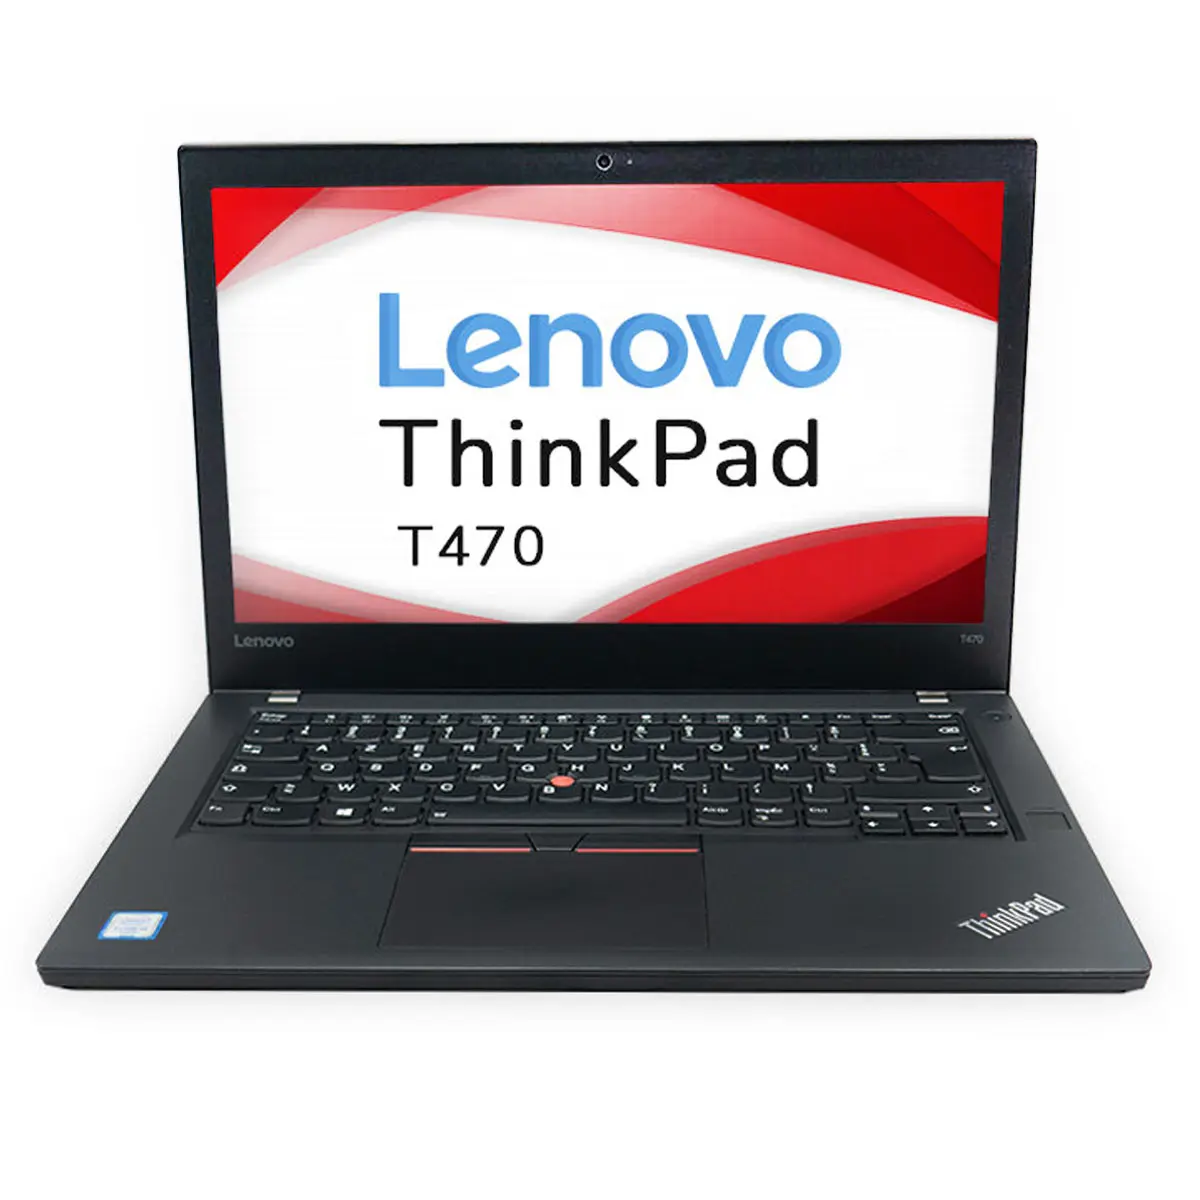 Lenovo Thinkpad T470 256 SSD 16GB Ram